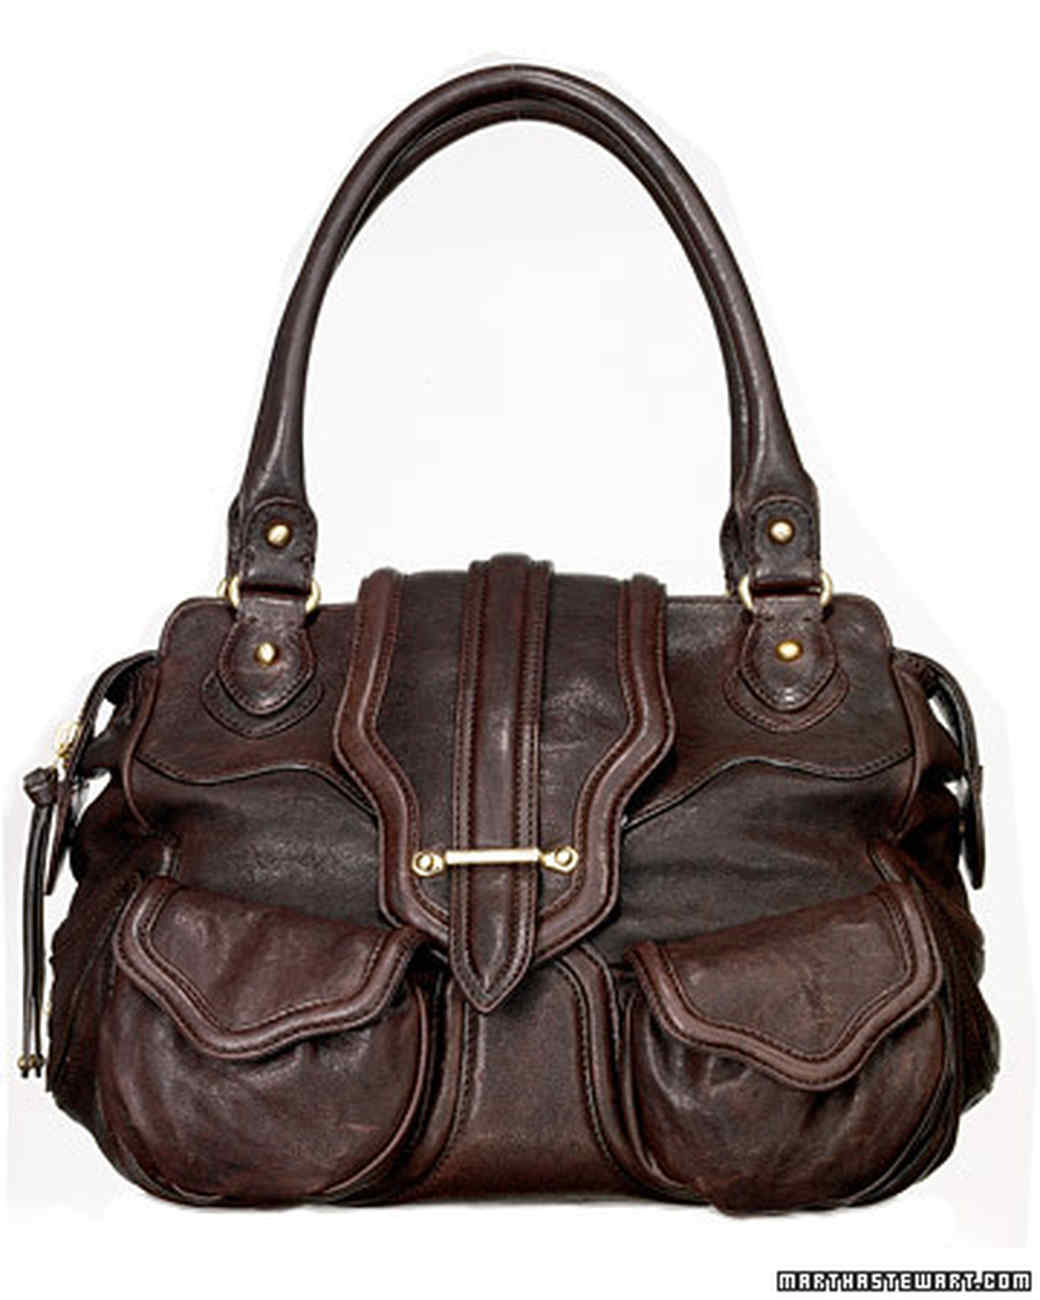 Investment Handbags | Martha Stewart